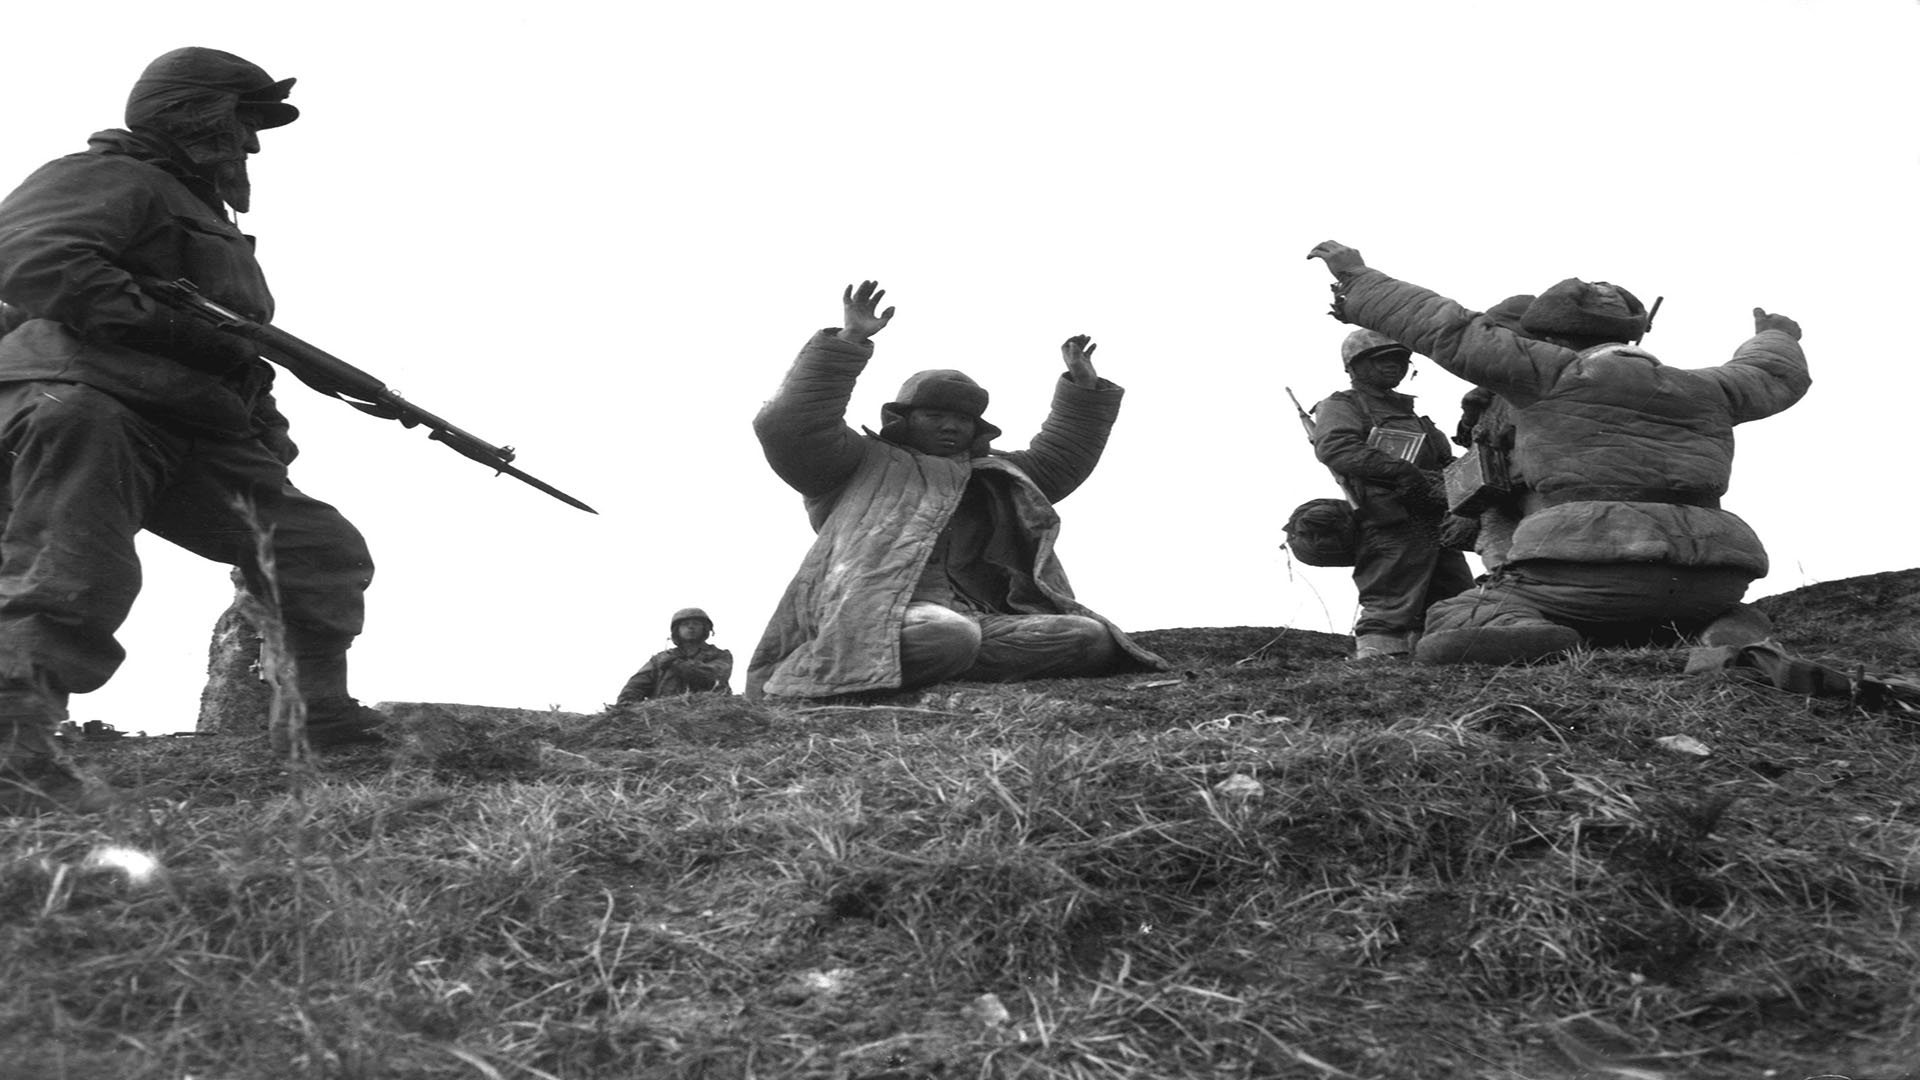 General 1920x1080 Korean War United States Marine Corps monochrome men uniform gun grass prisoners